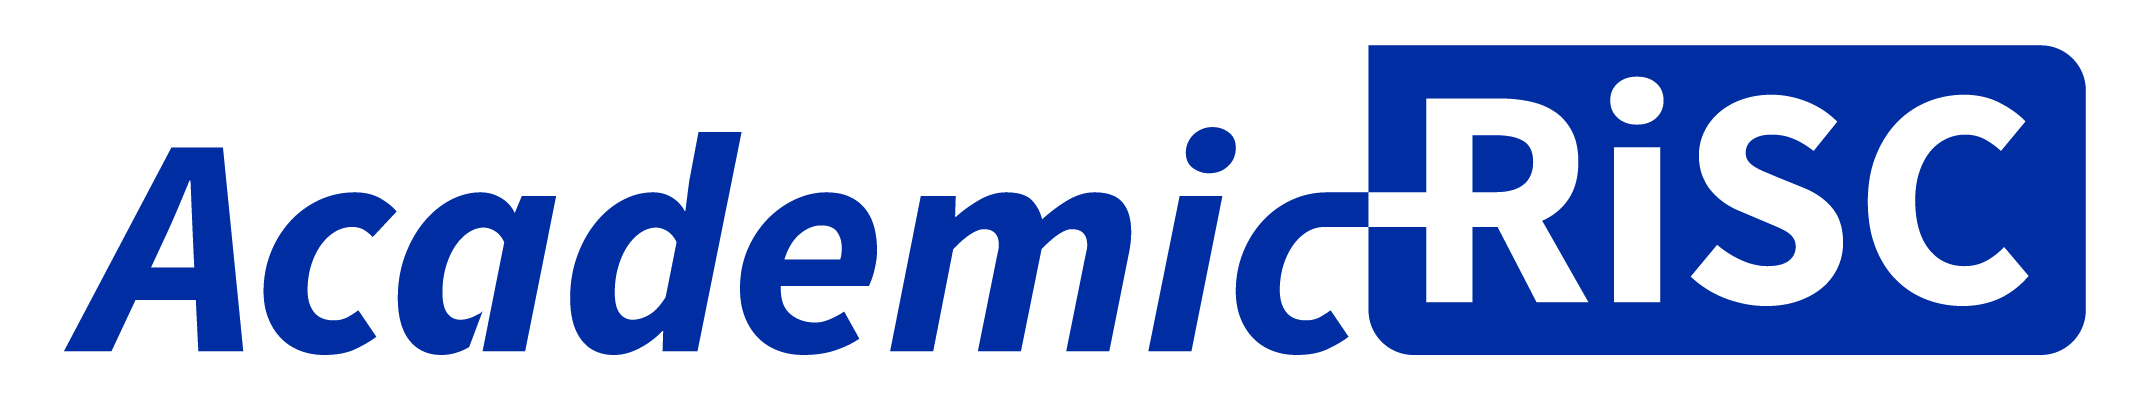 academicrisc logo